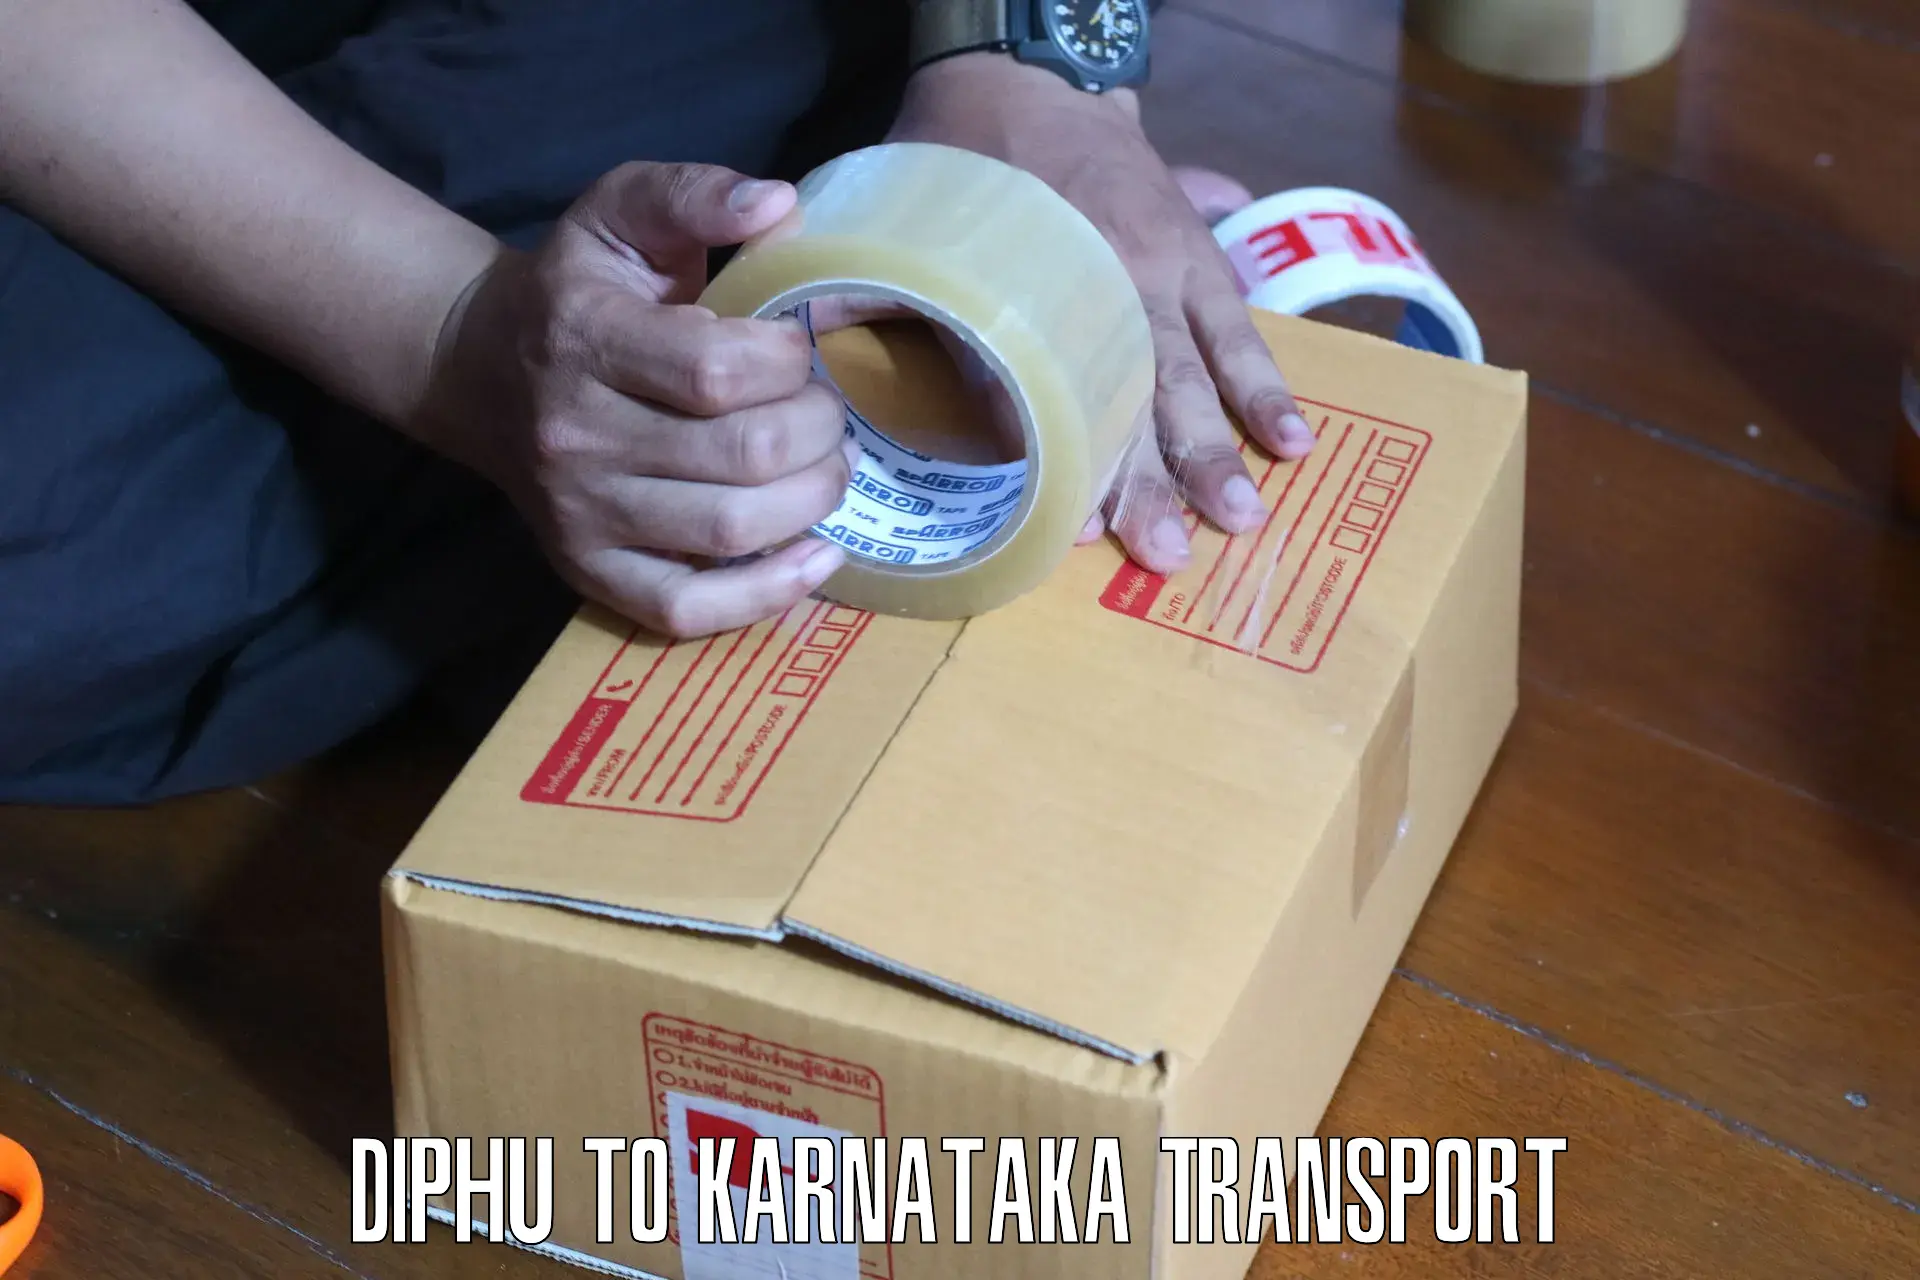 Shipping partner Diphu to Mudhol